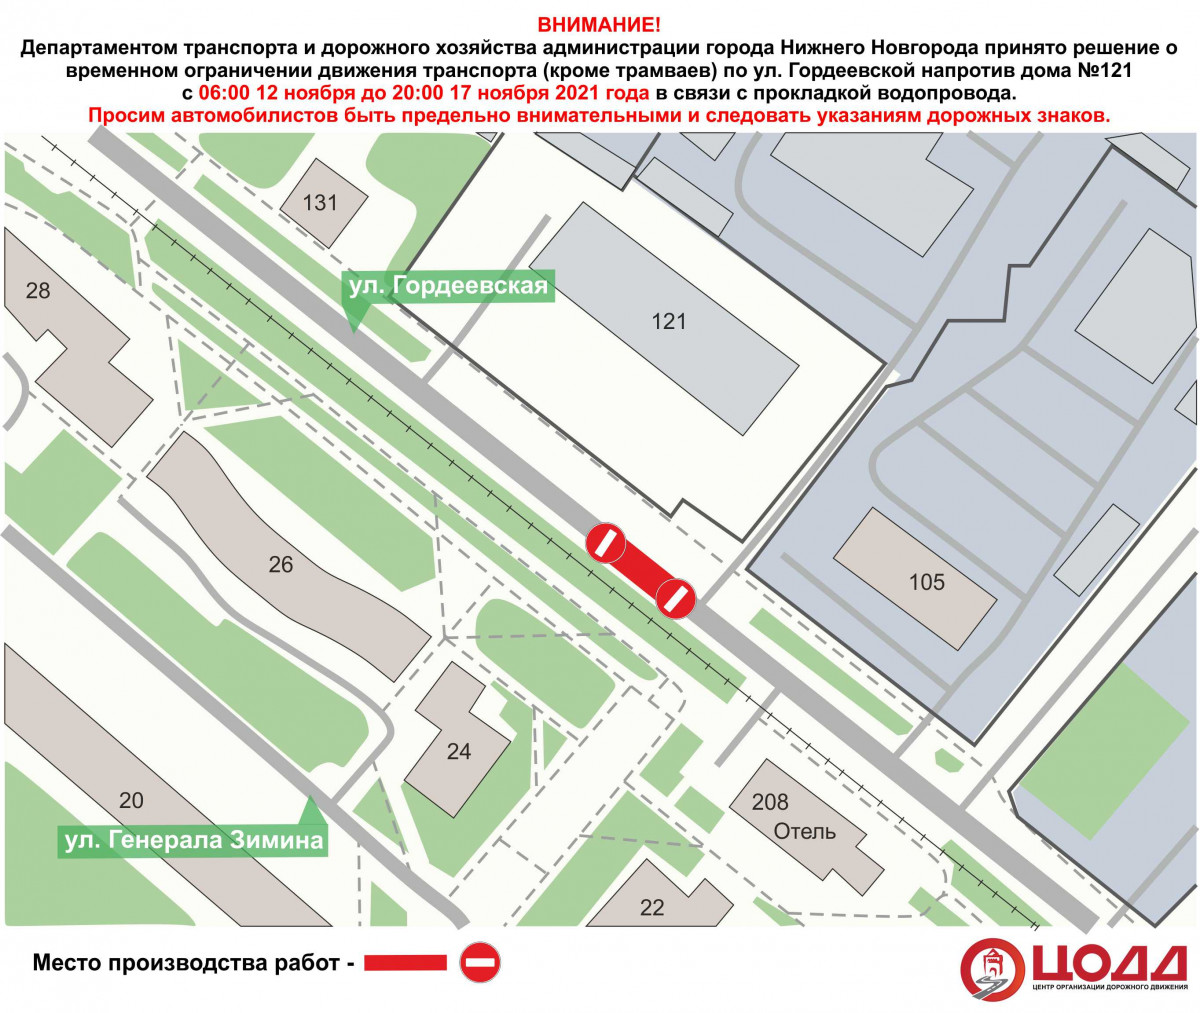 Движение транспорта будет приостановлено на улице Гордеевской с 12 ноября